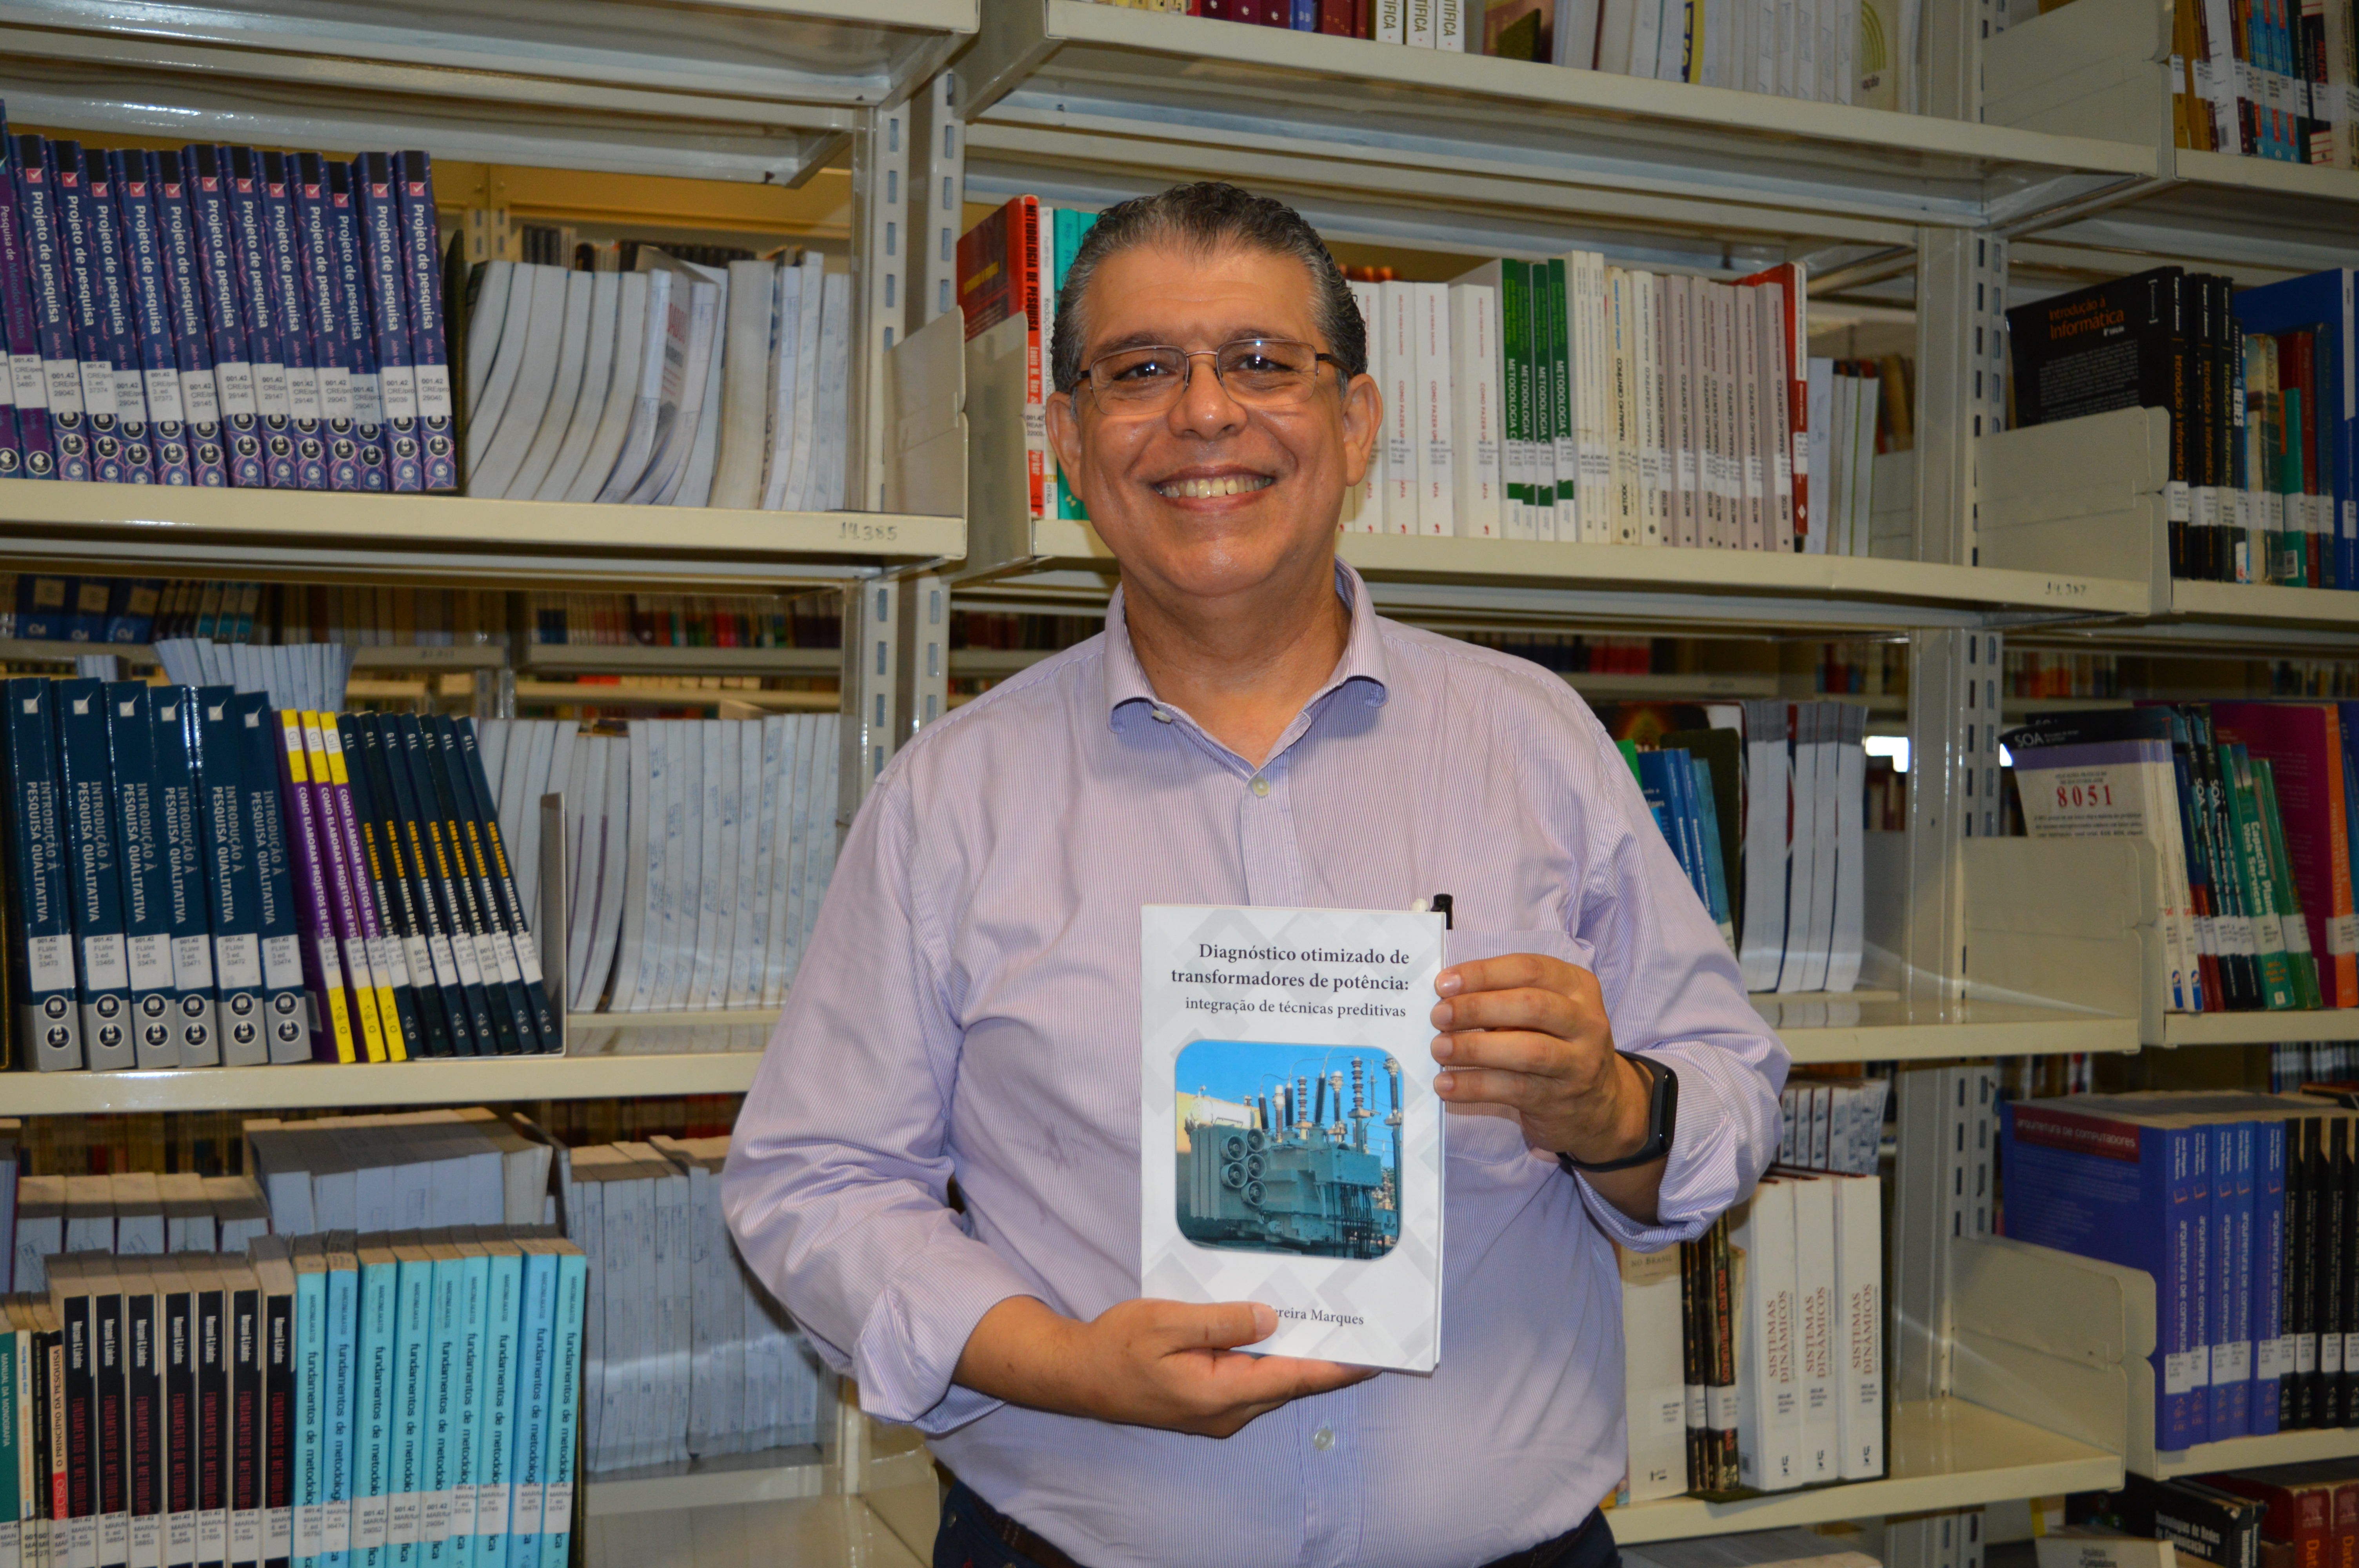 Professor do Câmpus Goiânia do IFG, André Marques, publicou neste ano livro que apresenta inovações para diagnóstico de transformadores de potência.